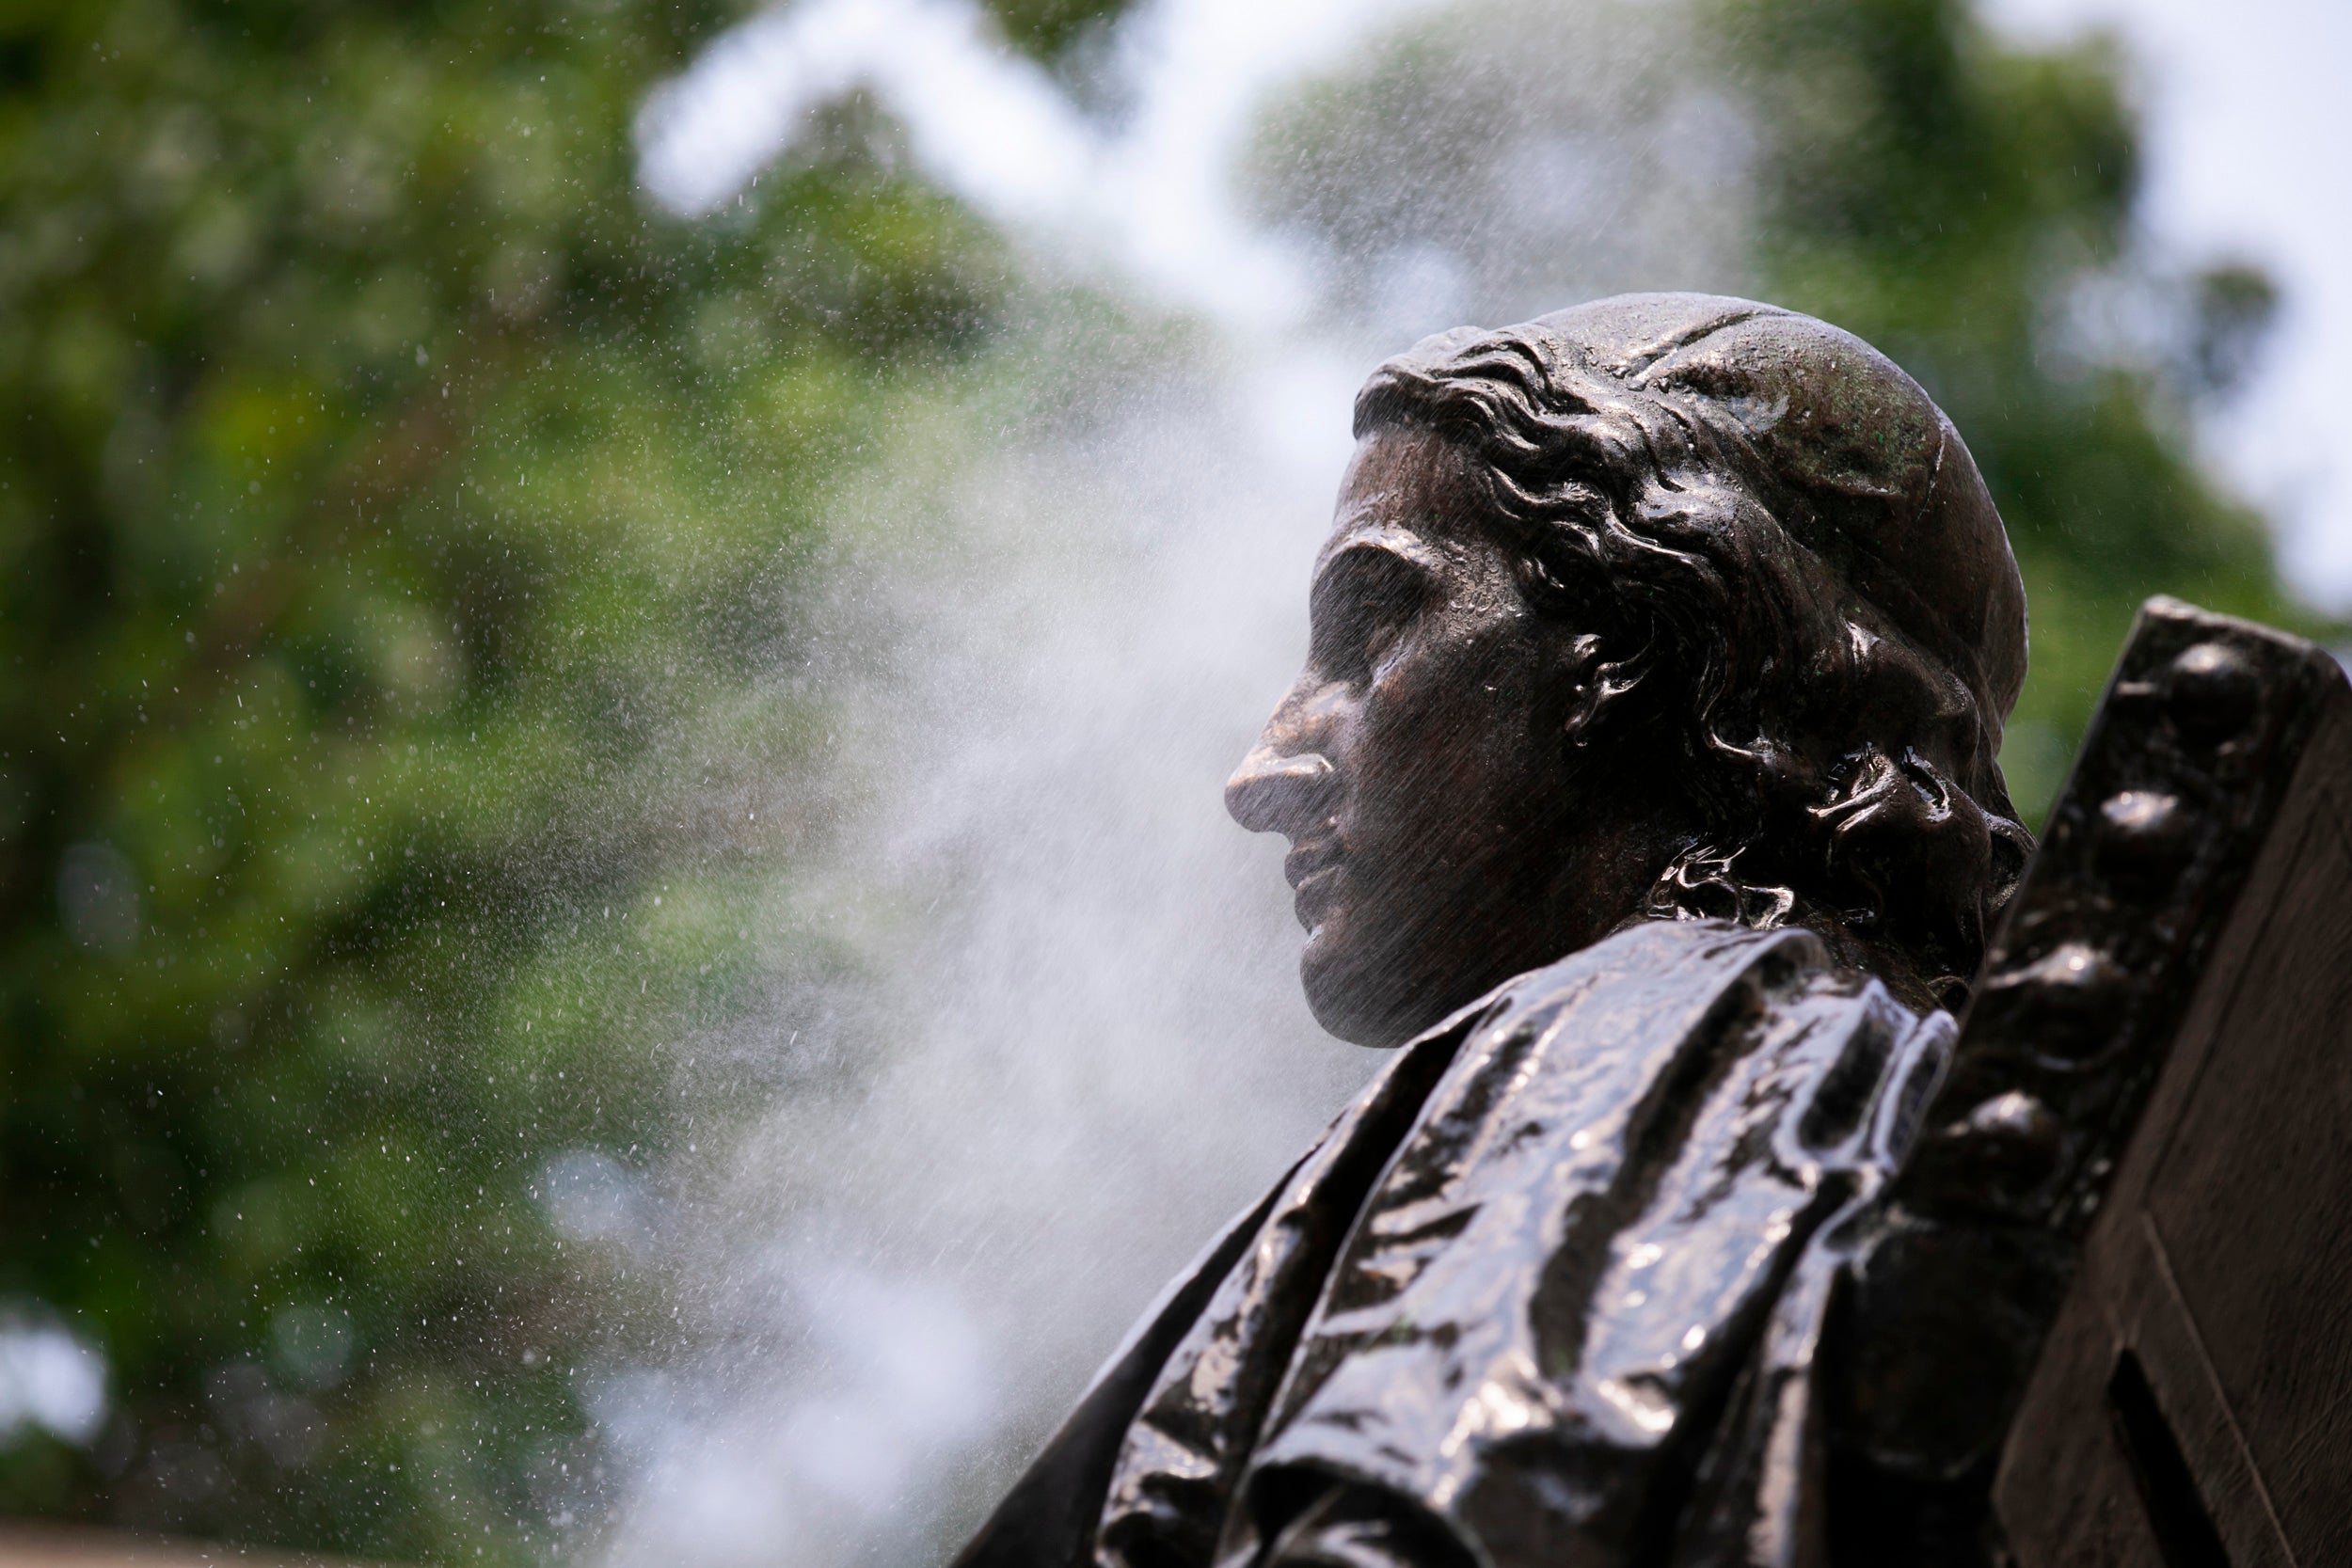 John Harvard statue being cleaned.